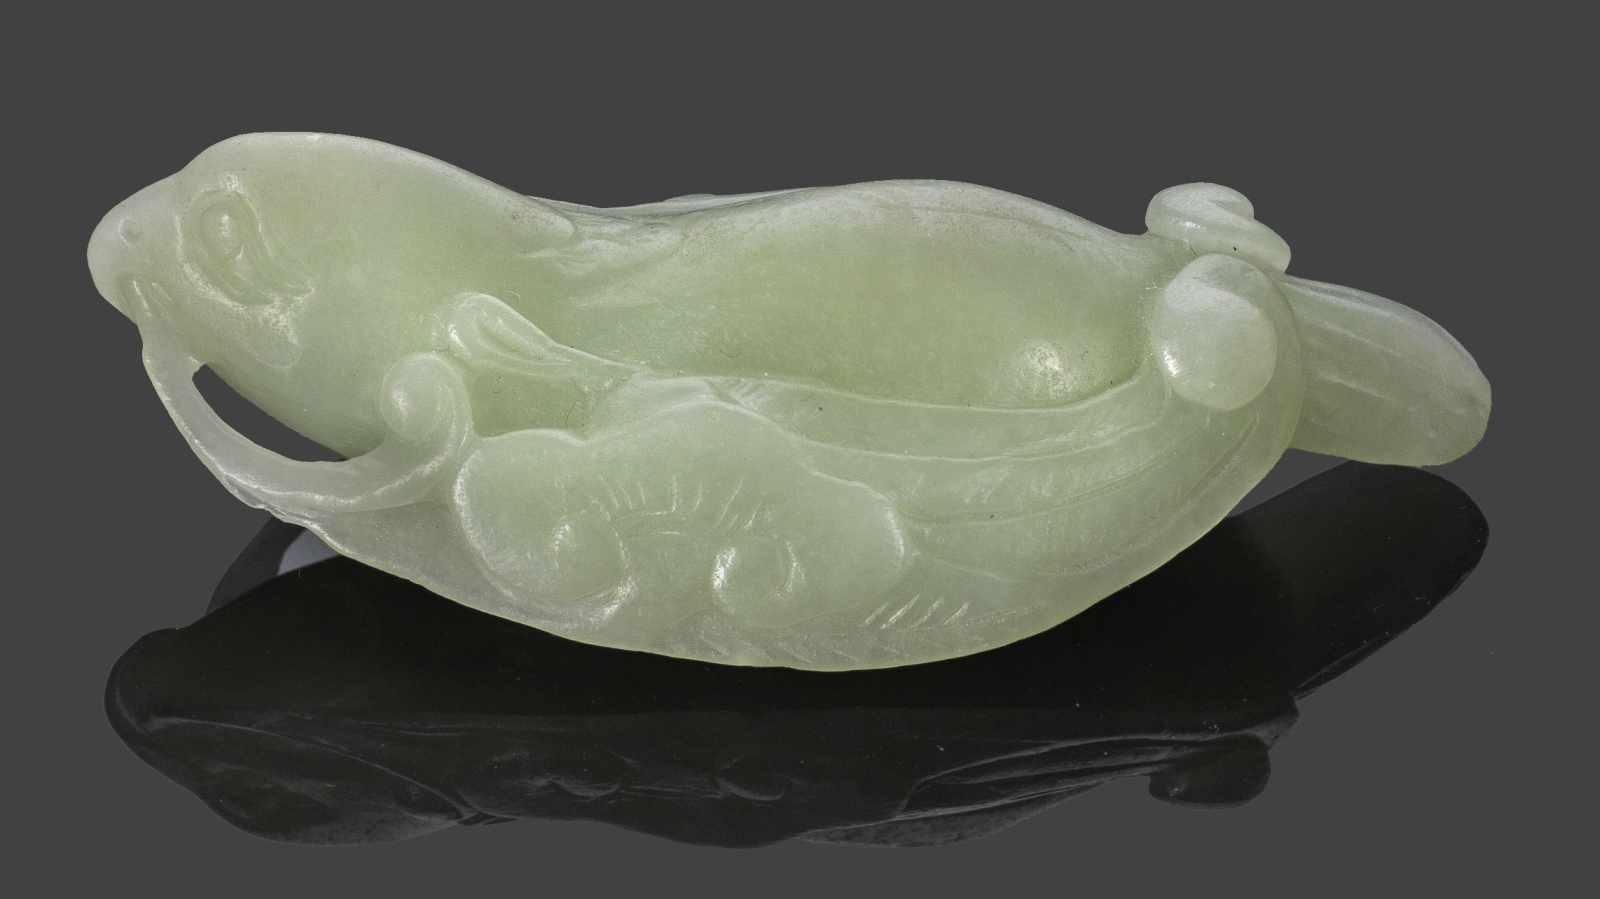 PapageiHelle seladongrüne Nephrit-Jade. Geschnitzt. Vollplastische Darstellung eines Papageis mit